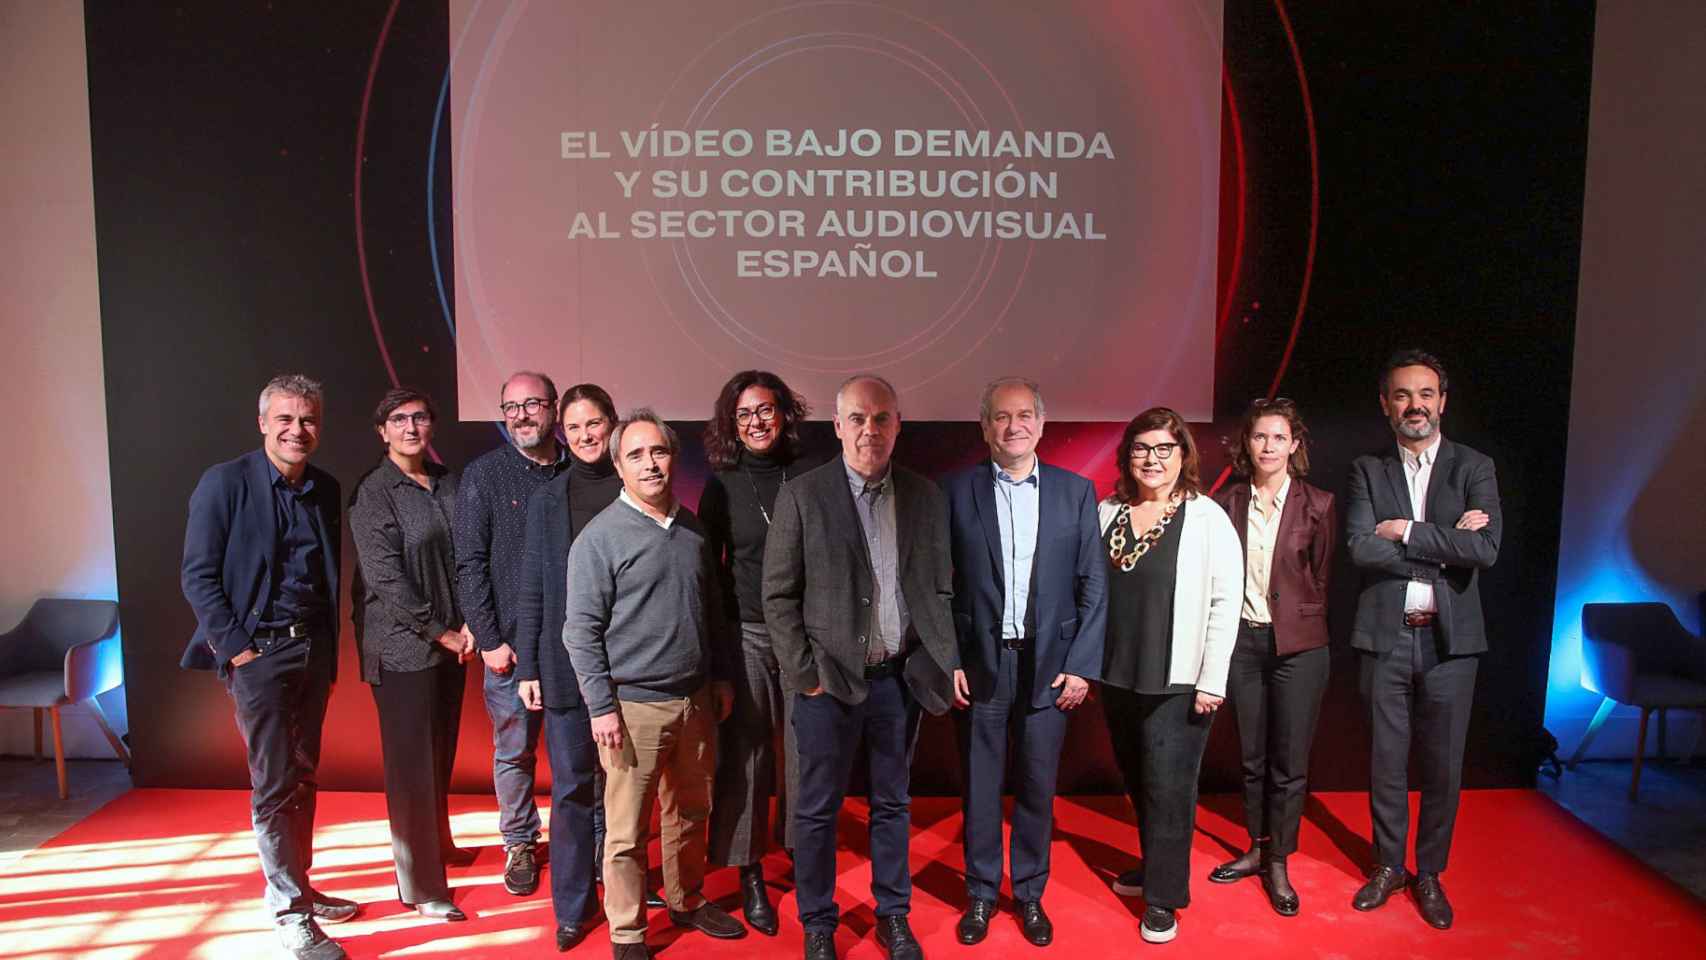 Foto de familia de todos los participantes en la jornada “La contribución de los servicios bajo demanda al sector audiovisual español”, organizada por la Asociación Española de la Economía Digital (Adigital).